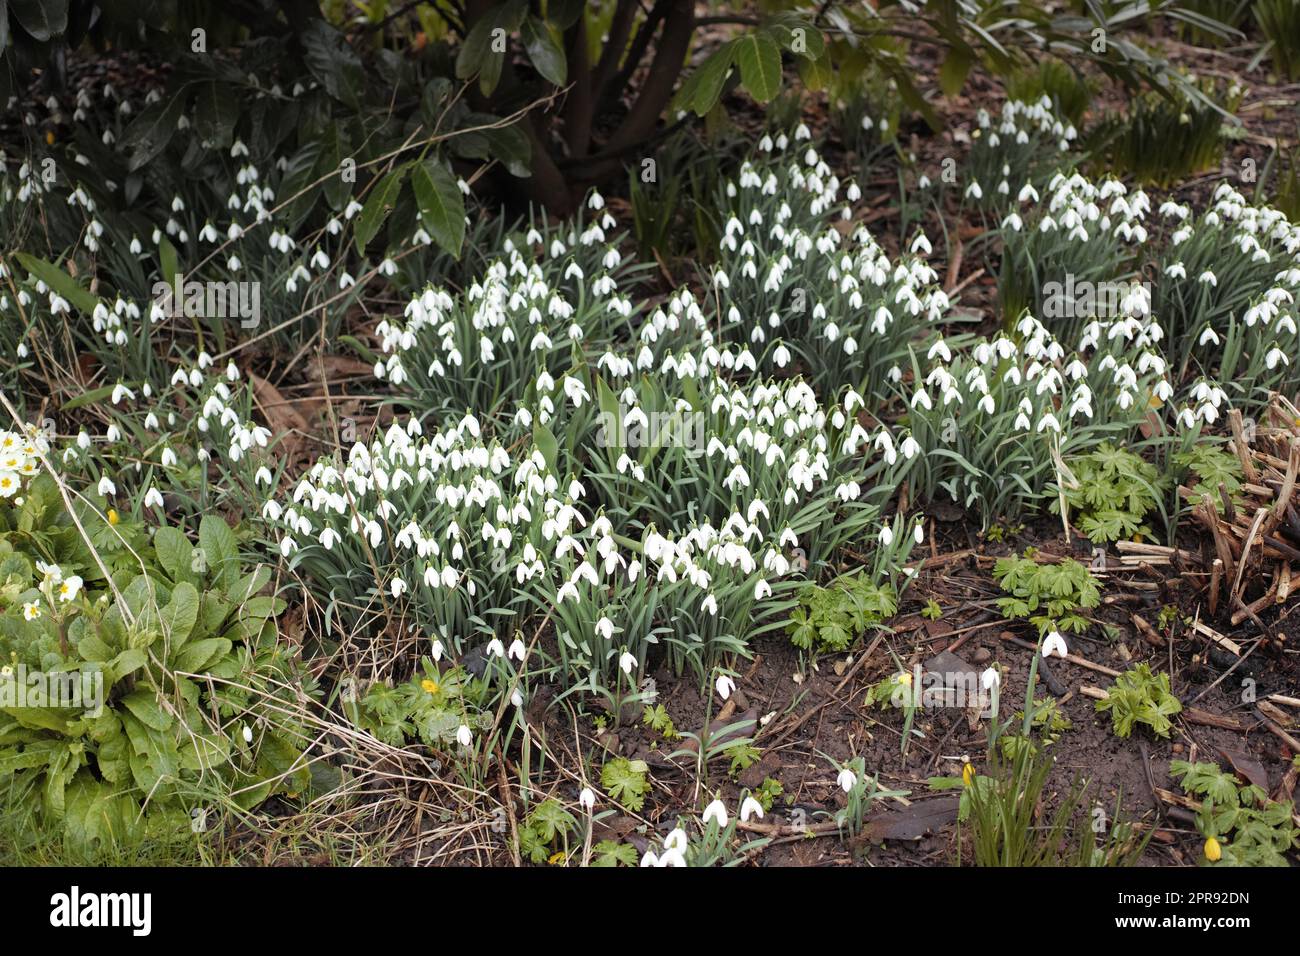 Bellissimi fiori di Galanthus nivalis o snowdrop che fioriscono nel terreno di un giardino in un giorno di primavera, con foglie verdi luminose e alberi di bosco sullo sfondo. Primo piano del paesaggio naturale. Foto Stock